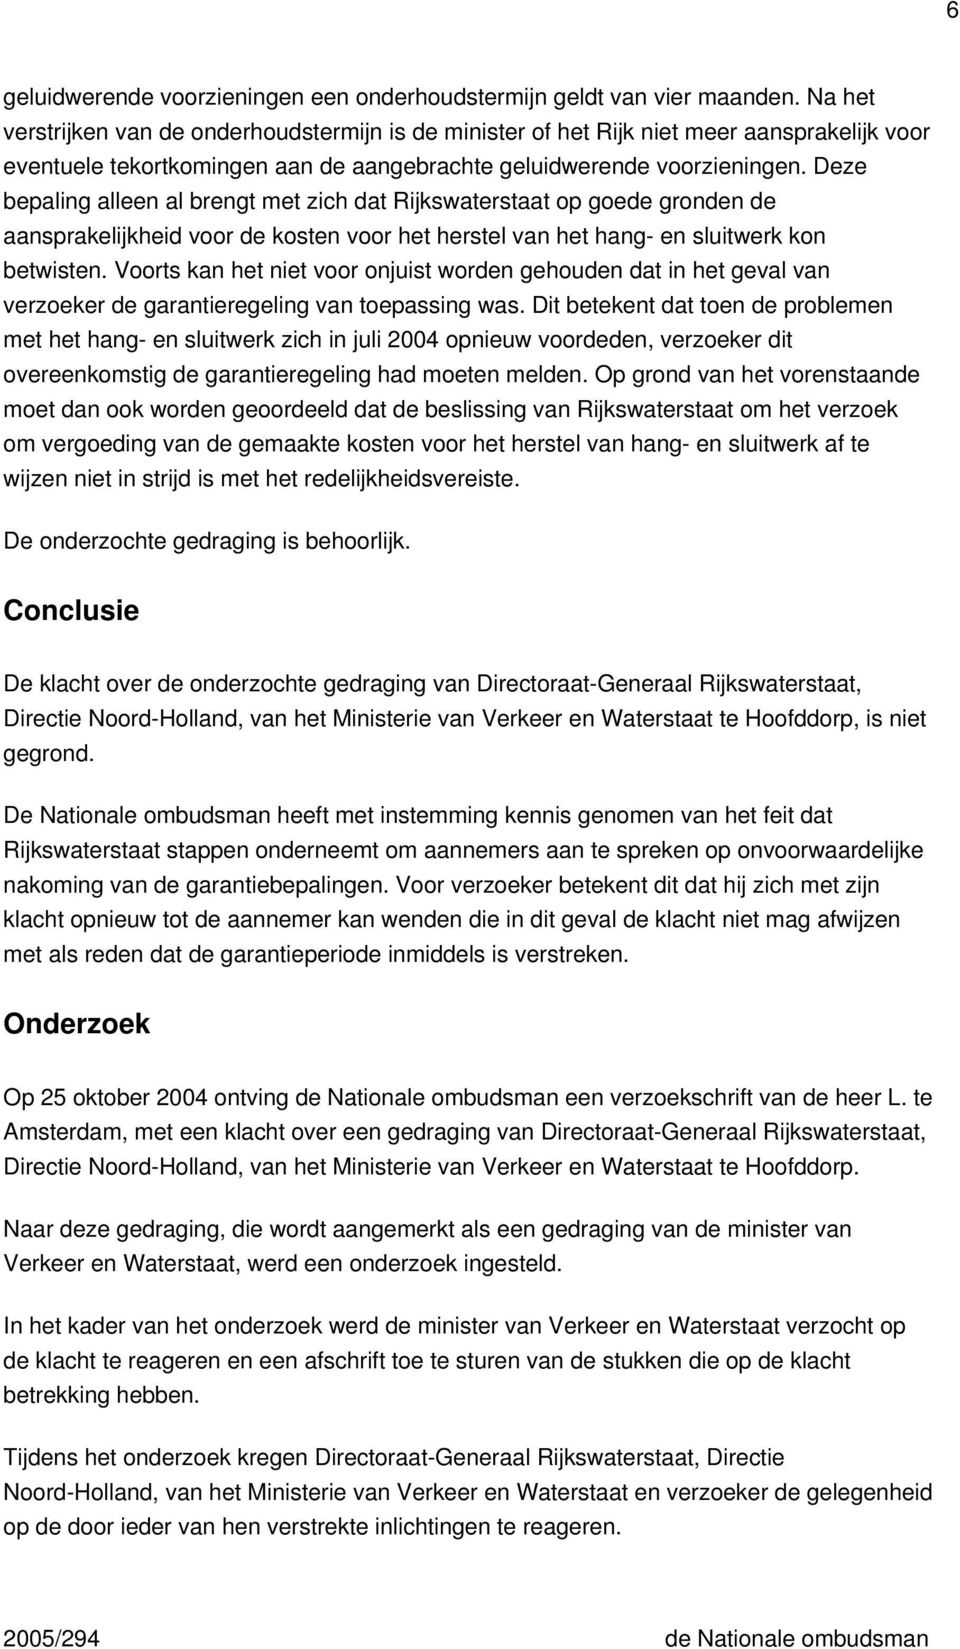 Deze bepaling alleen al brengt met zich dat Rijkswaterstaat op goede gronden de aansprakelijkheid voor de kosten voor het herstel van het hang- en sluitwerk kon betwisten.